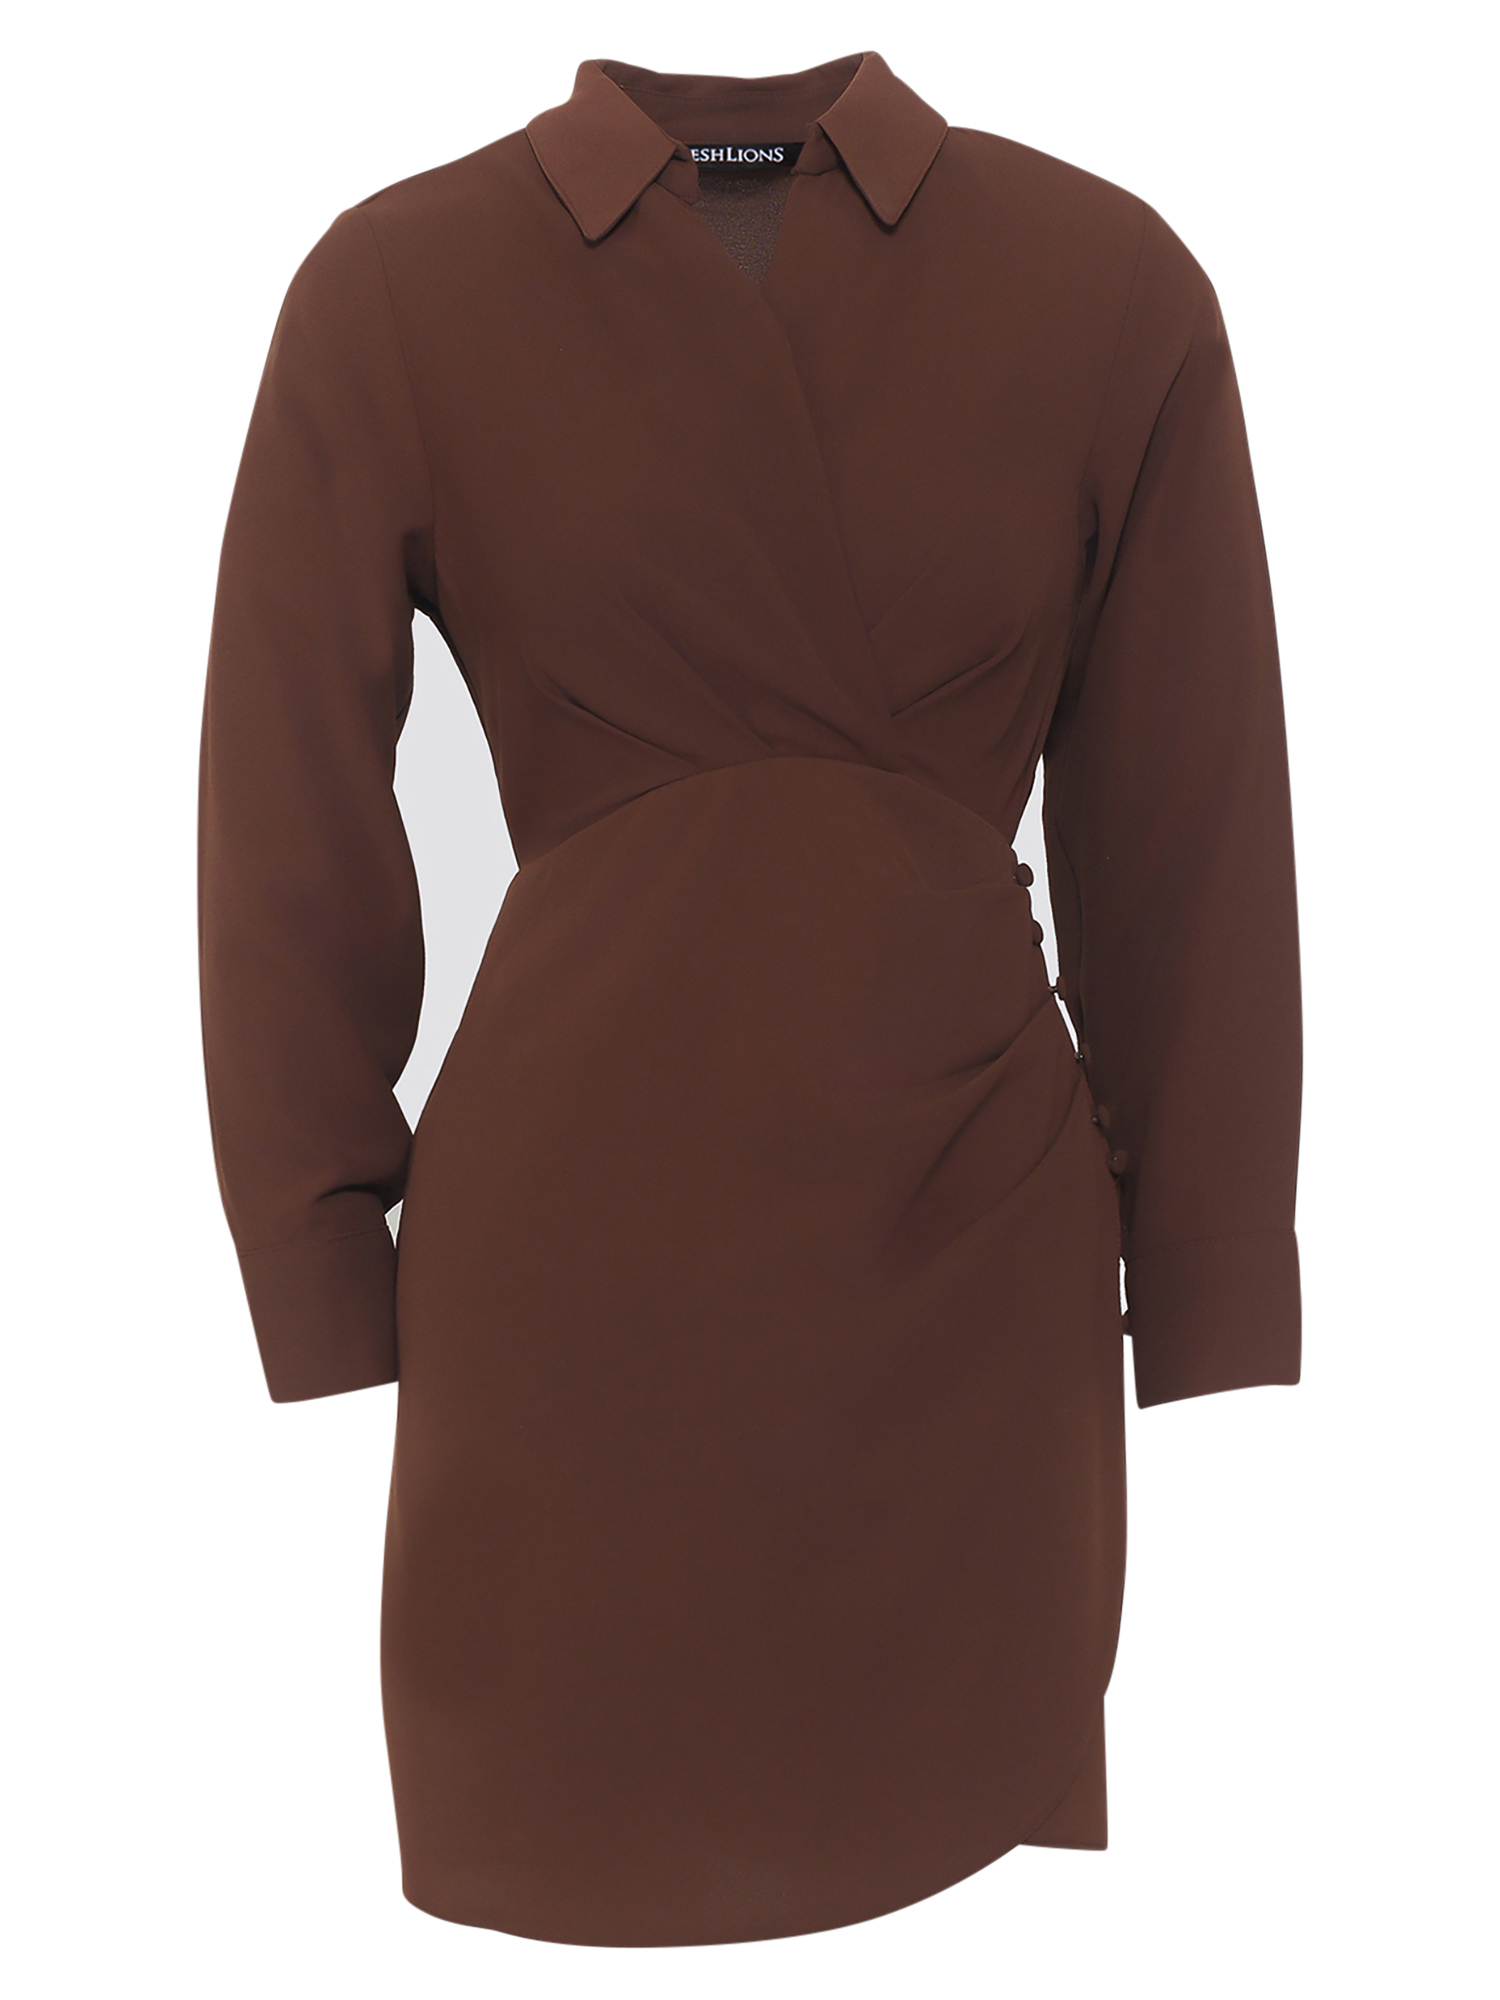 Платье Freshlions Magda, коричневый платье magda весеннее 42 размер новое